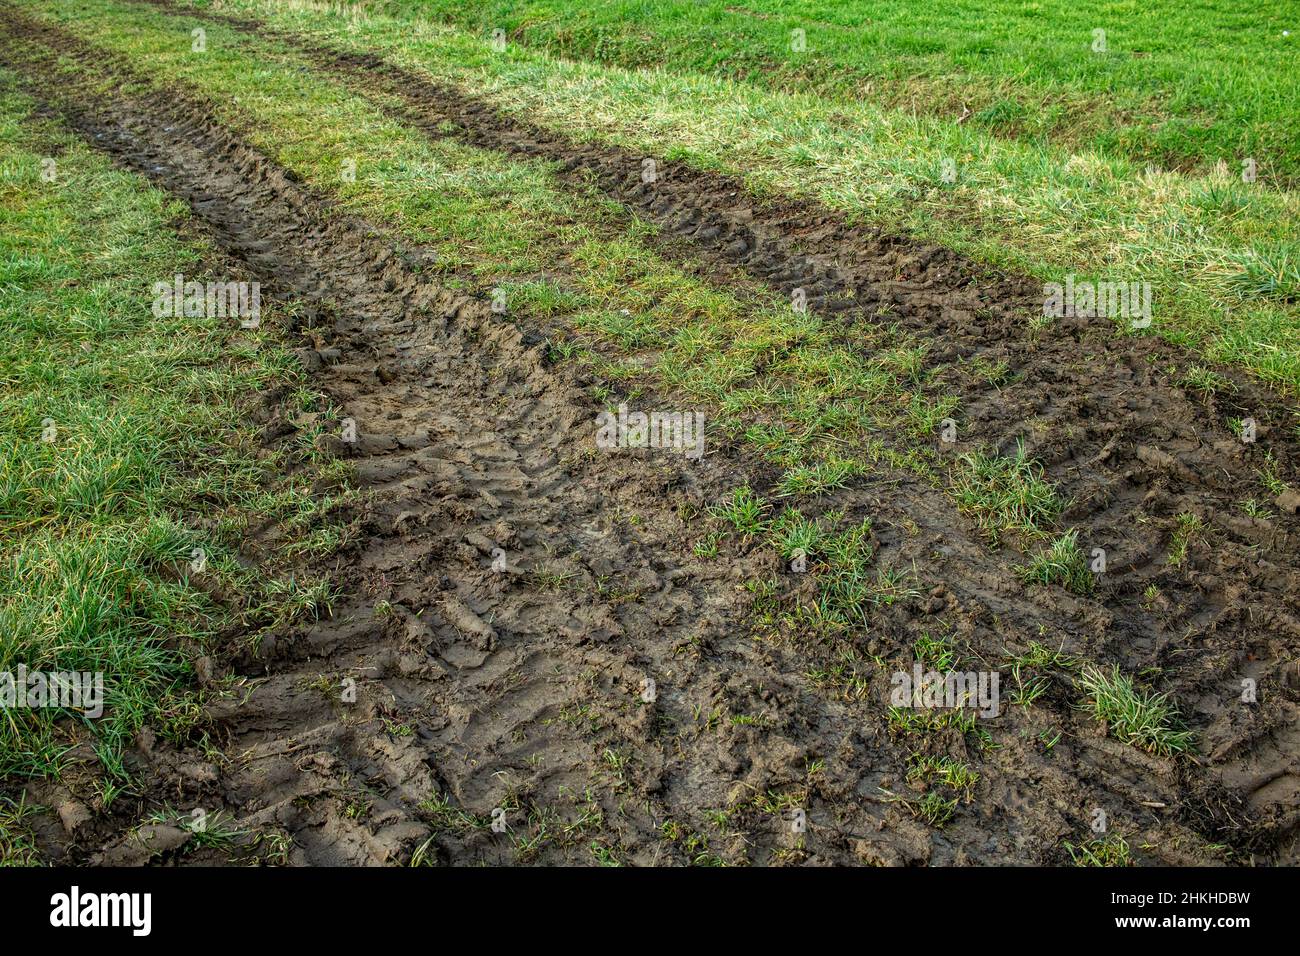 I veicoli agricoli con ruote grandi lasciano tracce profonde sugli pneumatici su un prato dopo che la pioggia ha ammorbidito la superficie del terreno Foto Stock